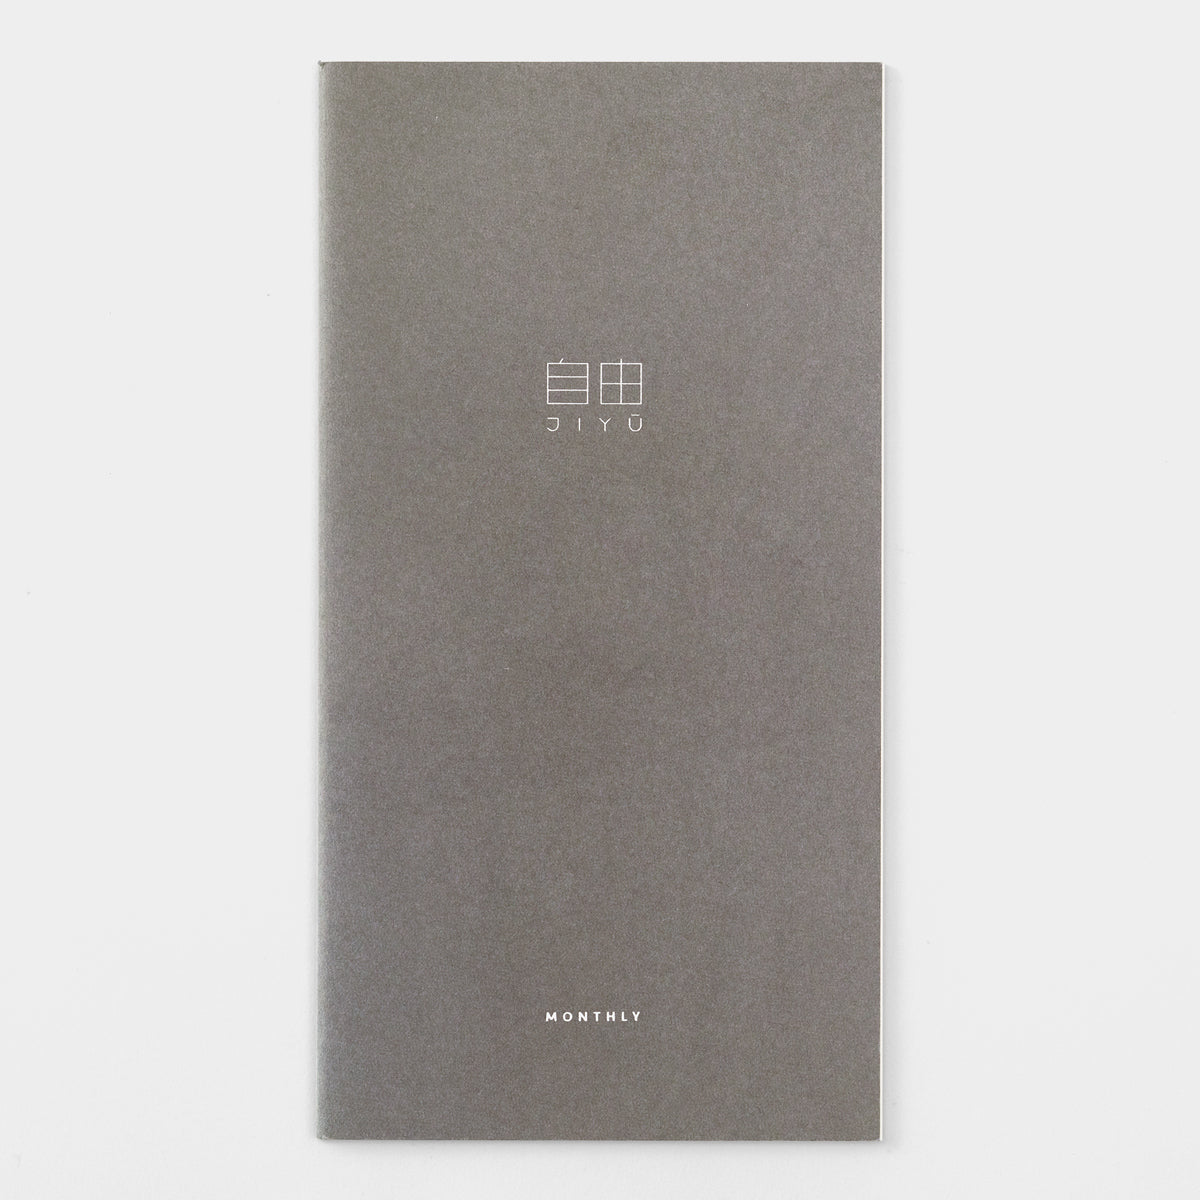 Traveler's Notebook Refill Baum-kuchen Lightweight Paper Monthly Free